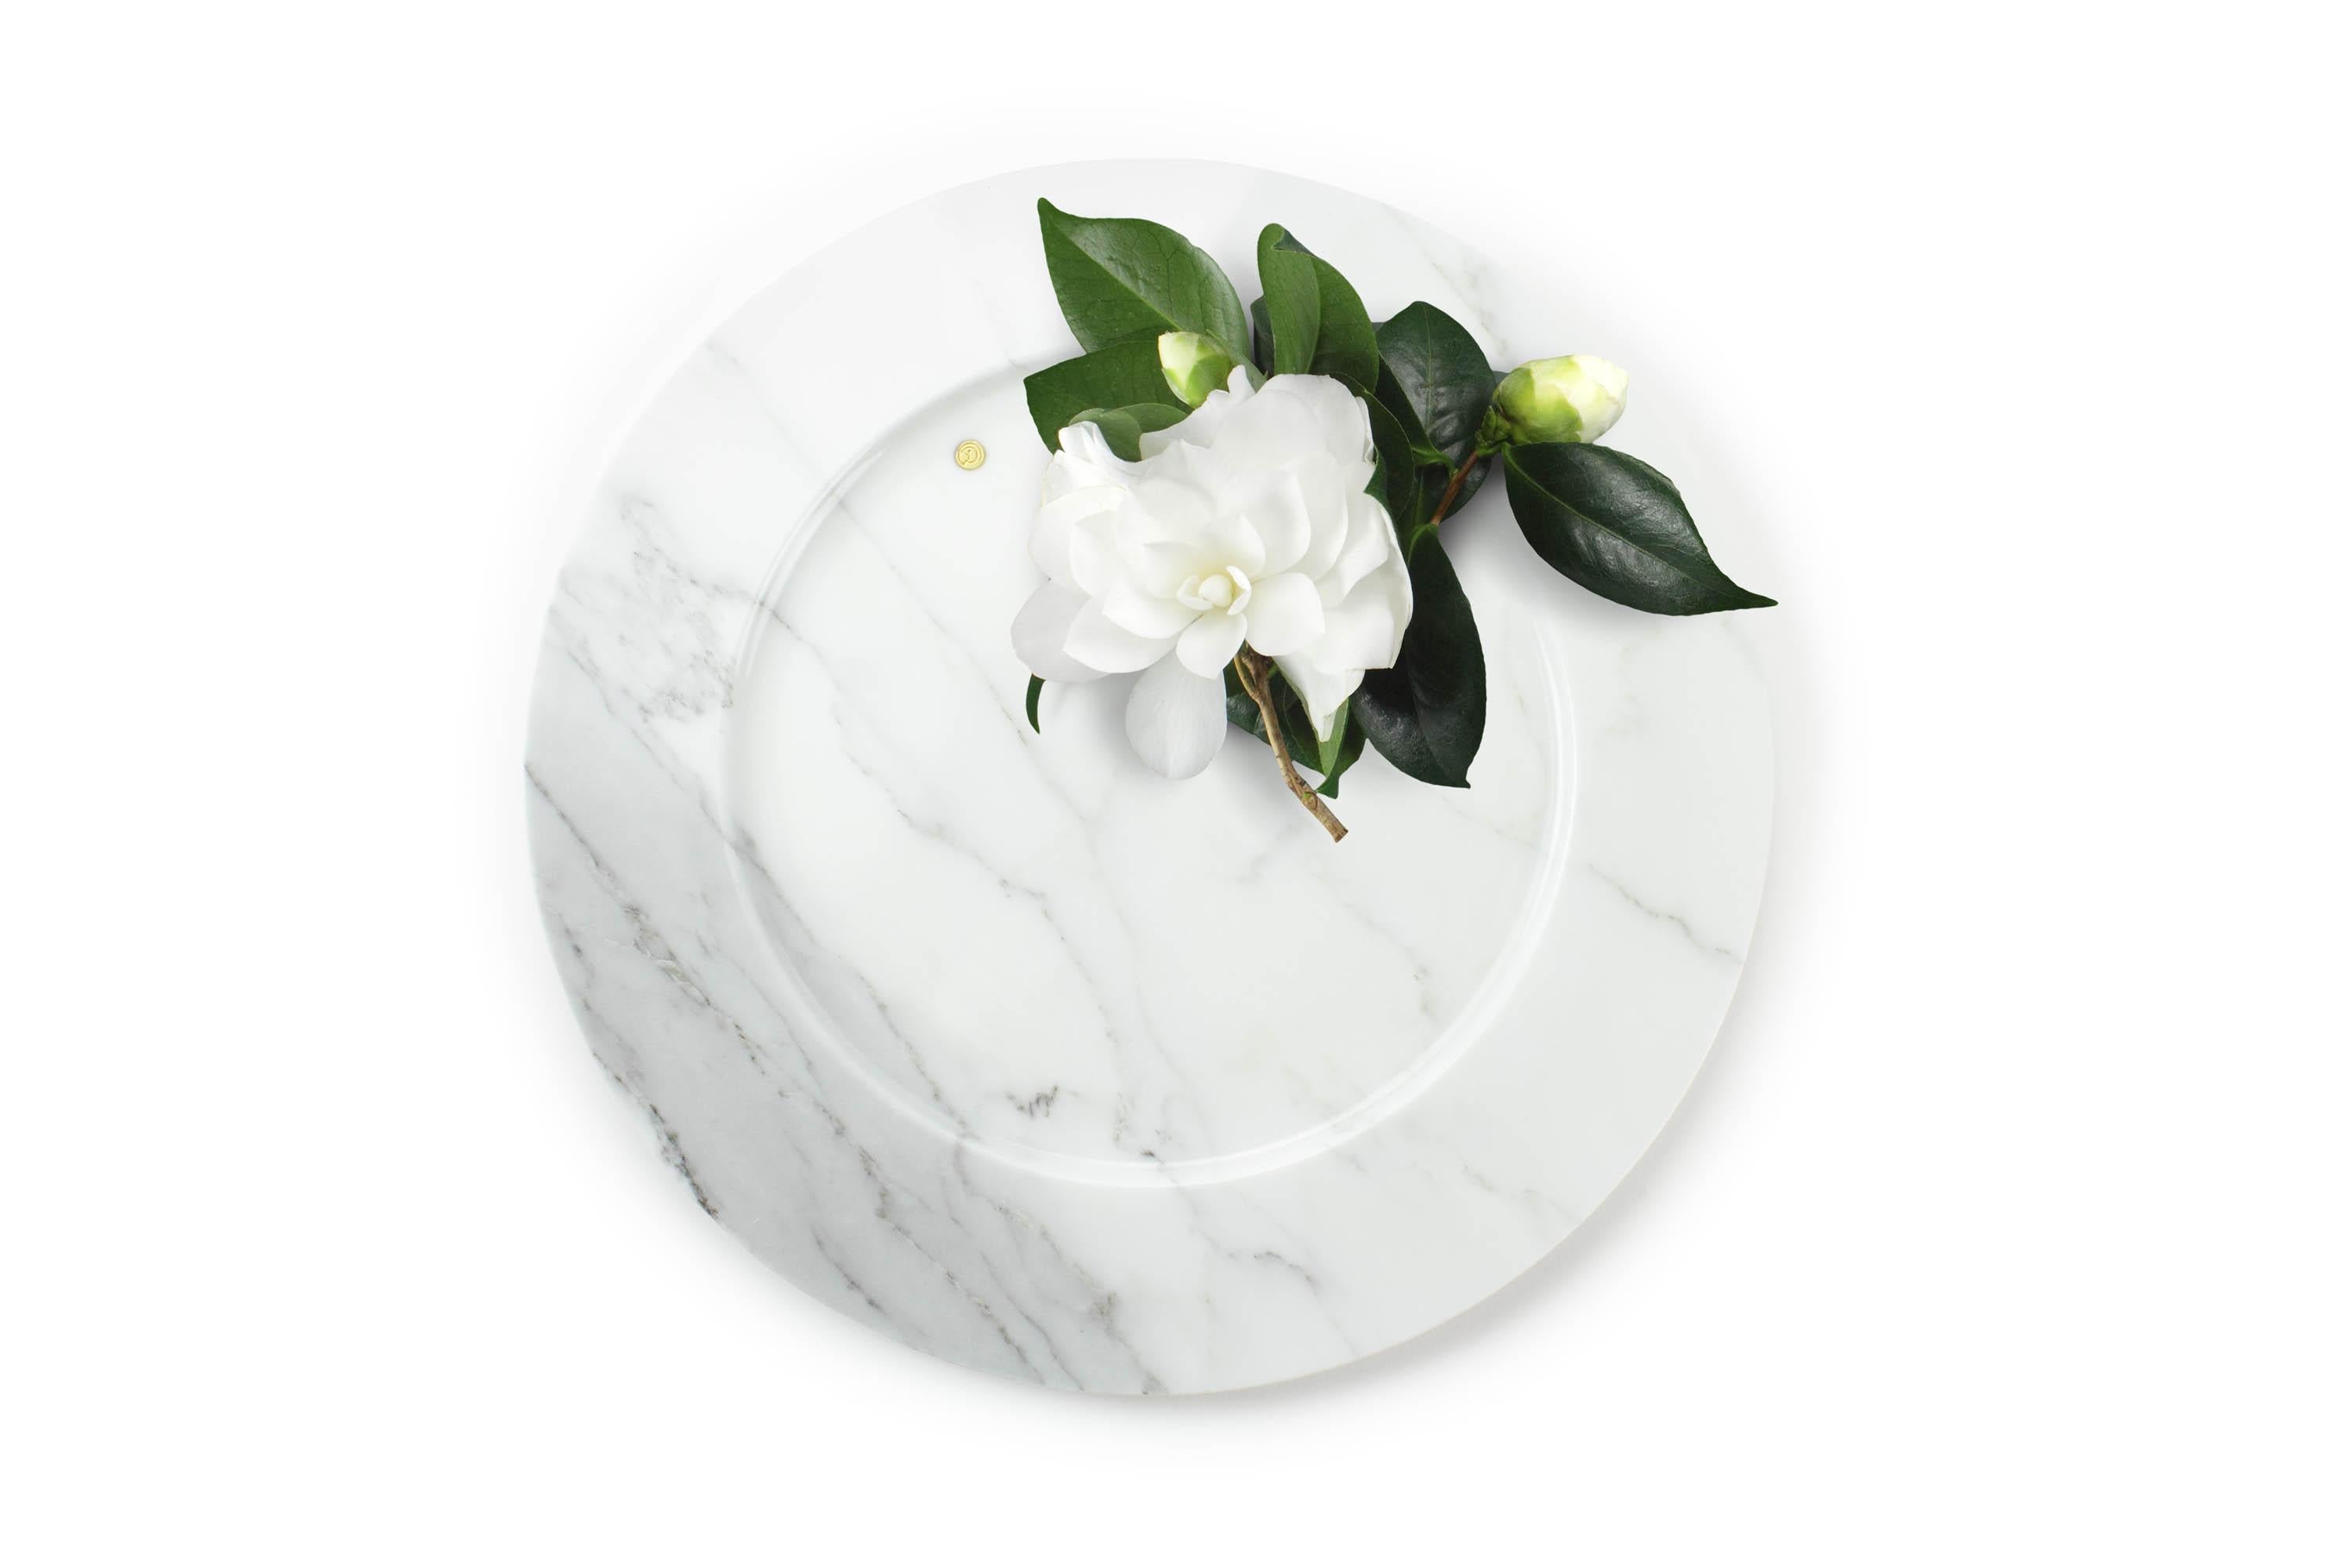 Assiette de présentation sculptée à la main en marbre Statuaire 'Altissimo'. Utilisation multiple en tant qu'assiettes de présentation, assiettes, plateaux et plateaux de service. Le précieux marbre blanc statuaire a toujours été le préféré des